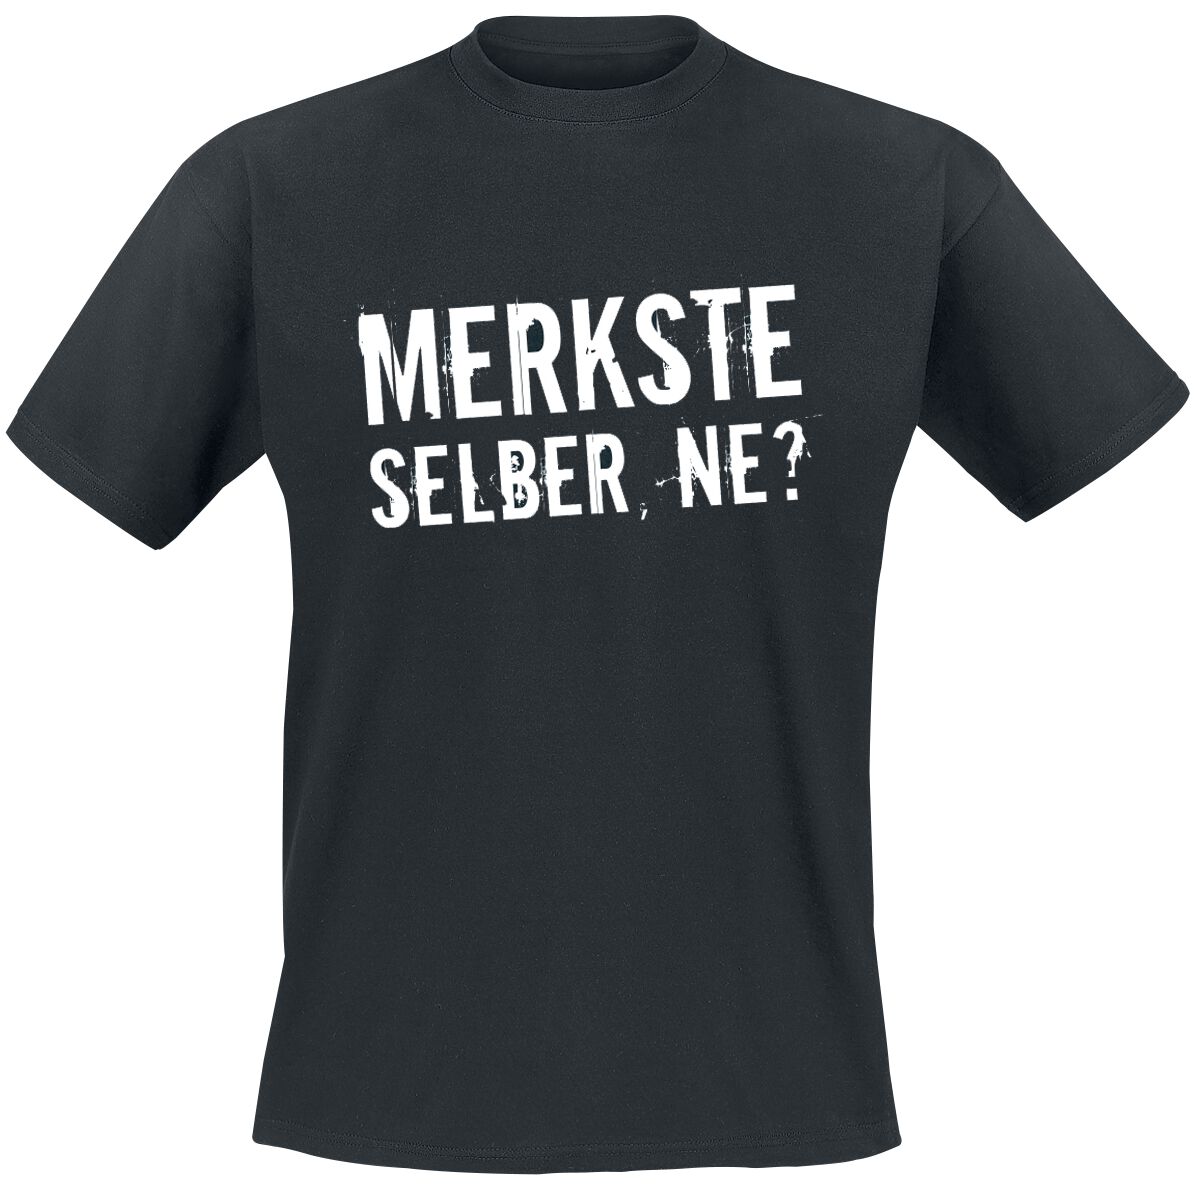 Sprüche T-Shirt - Merkste selber, ne? - XL bis 5XL - für Männer - Größe 4XL - schwarz